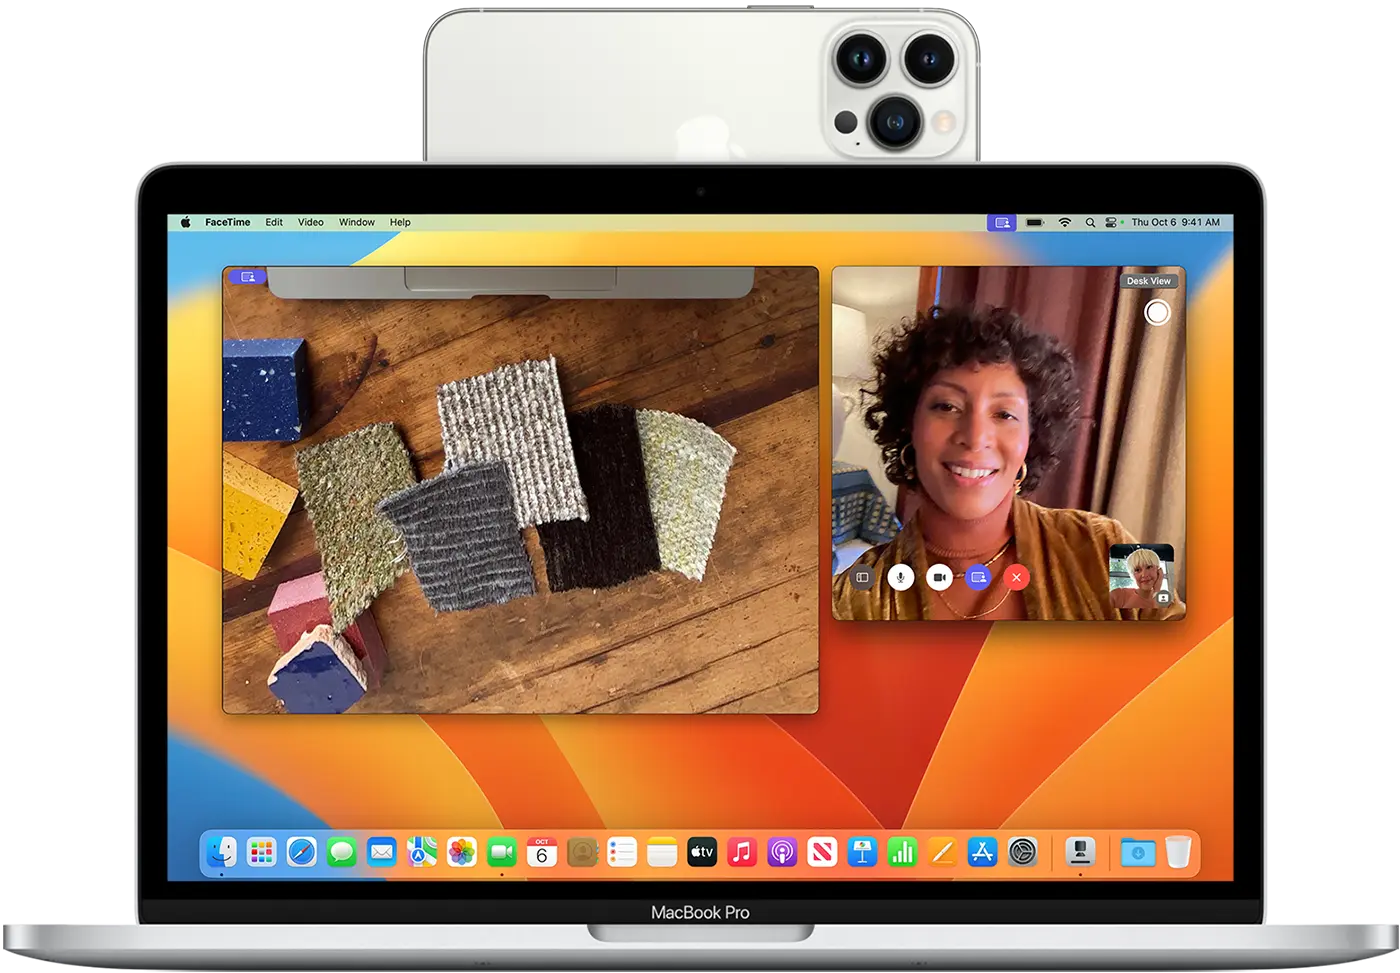 iPhone as Webcam on Mac